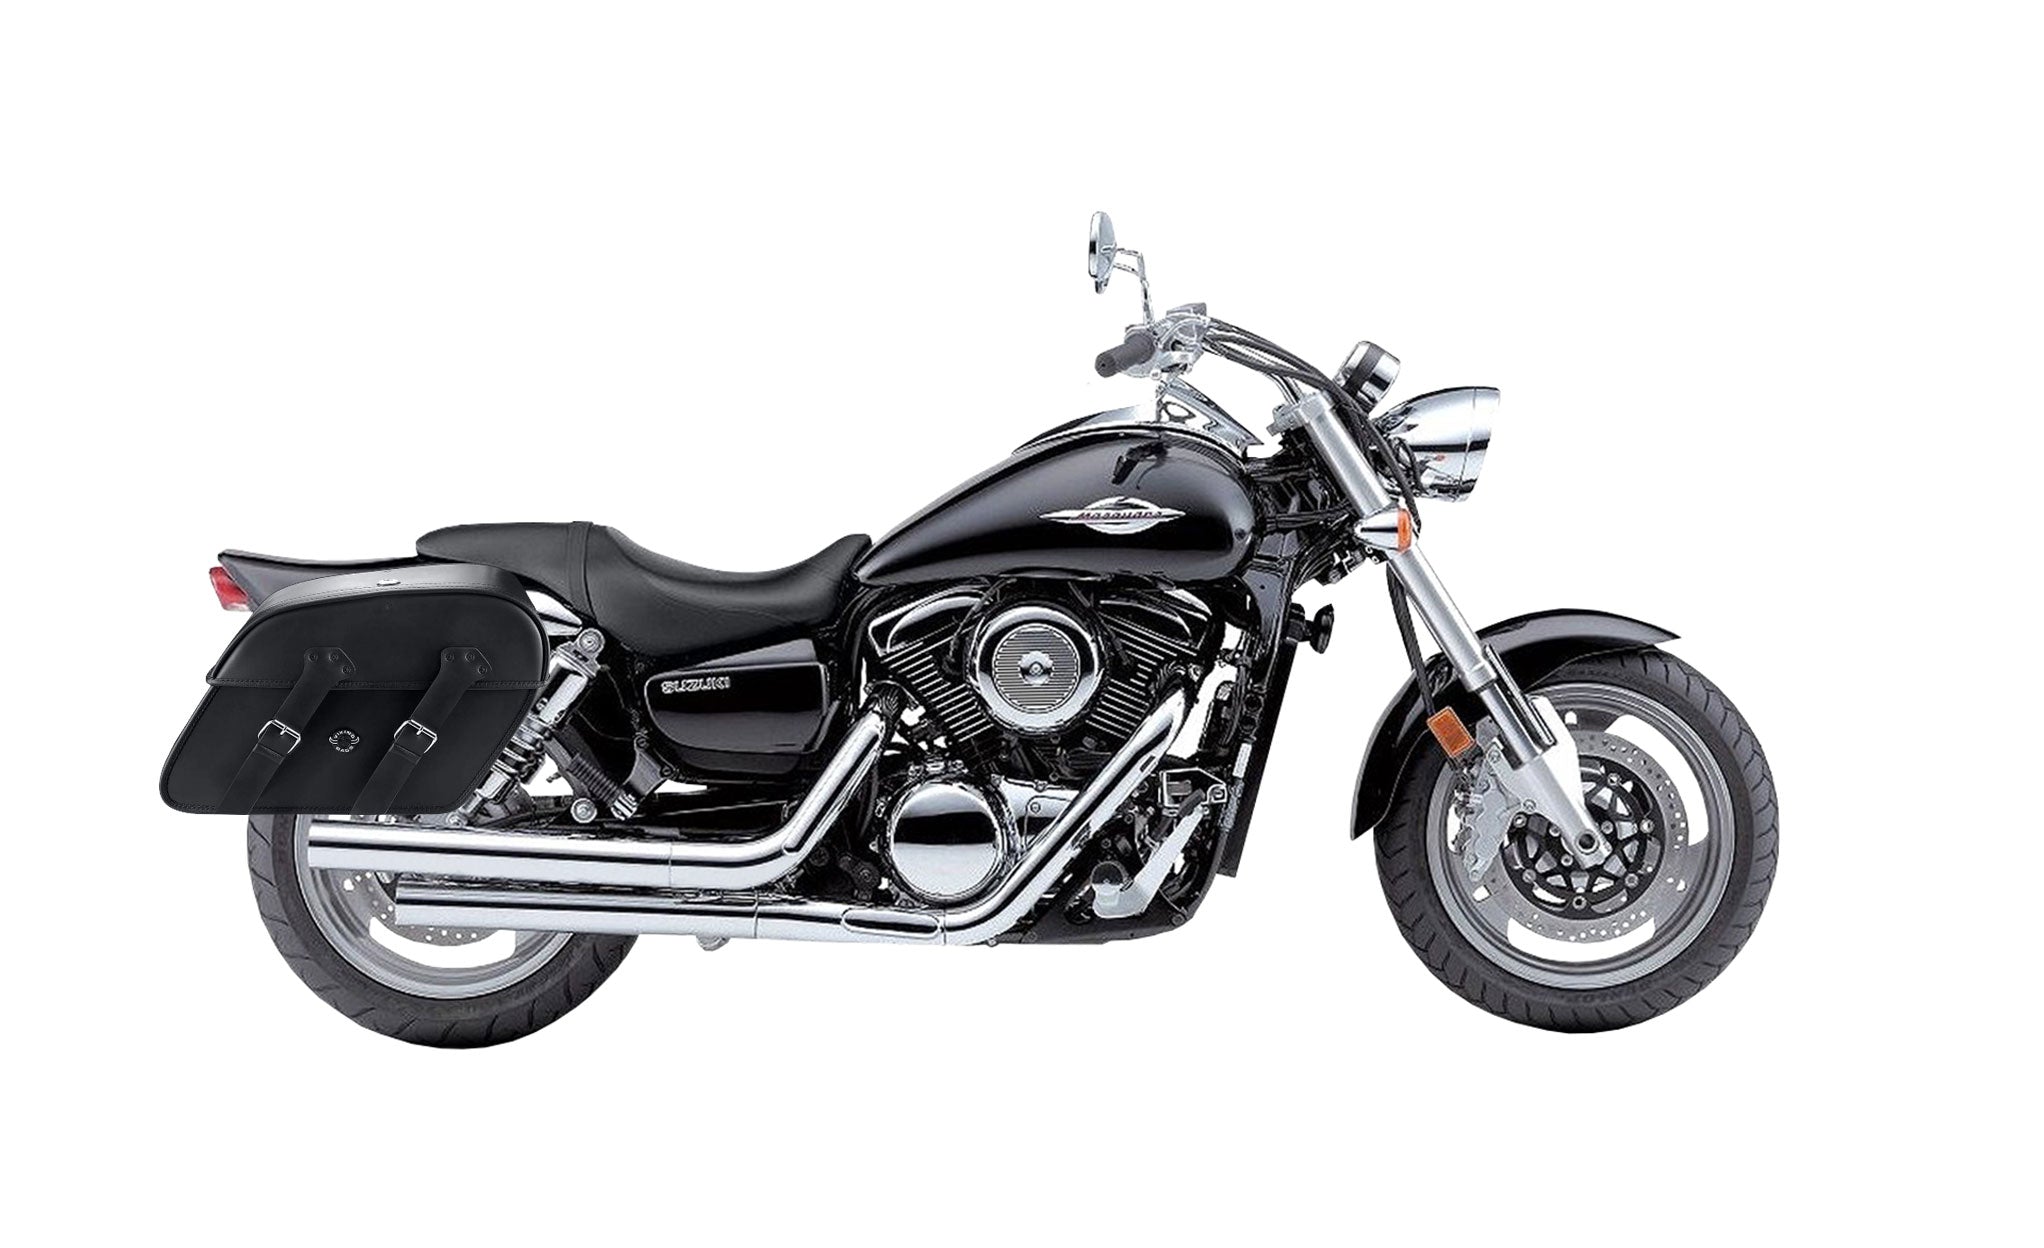 Viking Raven Extra Large Suzuki Boulevard M95 Vz1600 Leather Motorcycle Saddlebags on Bike Photo @expand